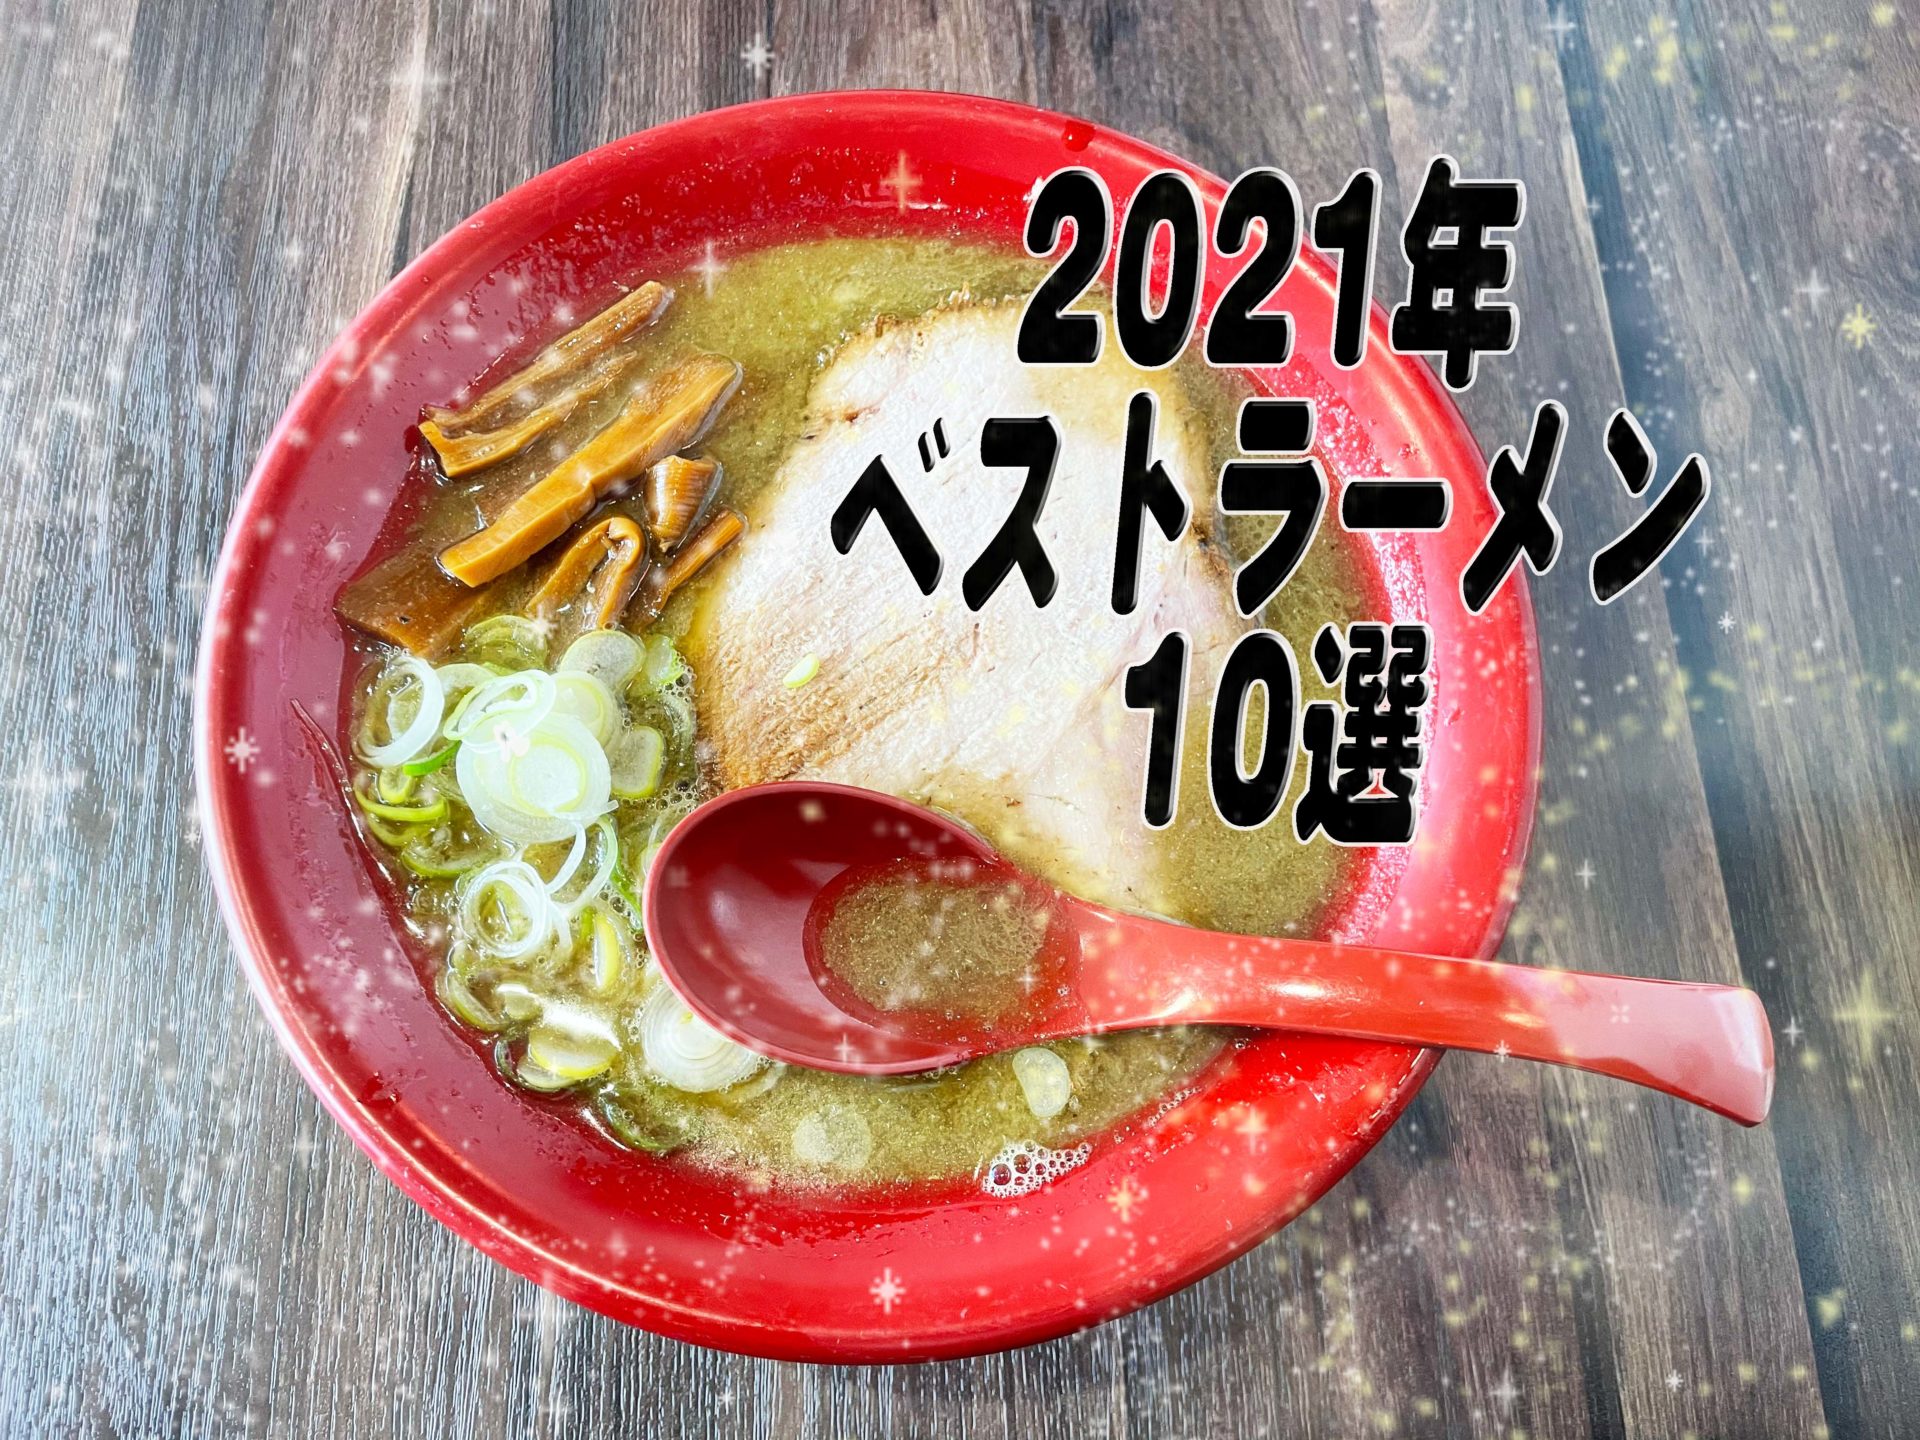 みやこさきが選ぶラーメン10選〜2021年振り返り〜